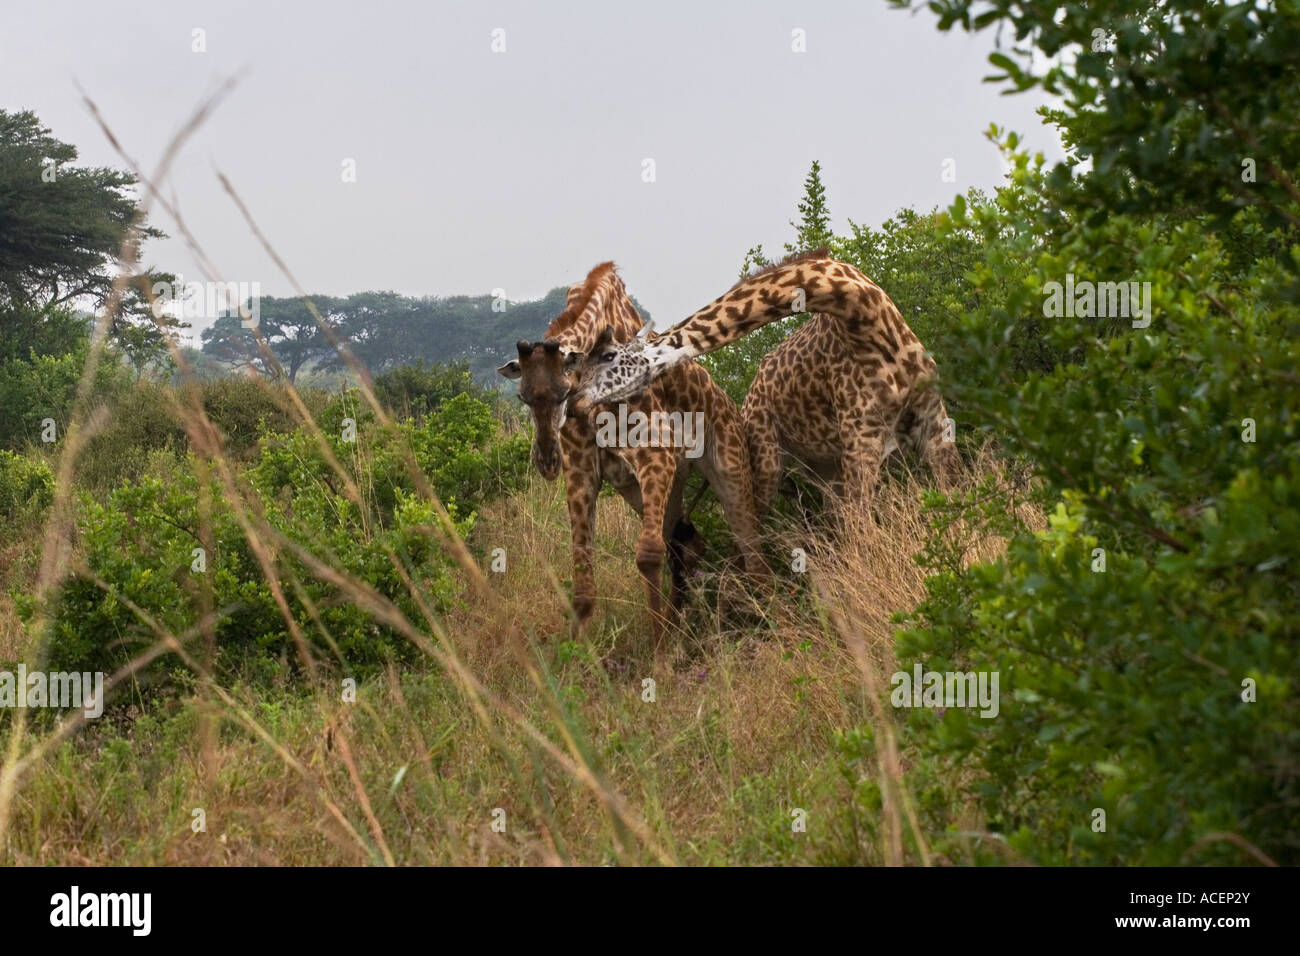 Bull Rothschild's Giraffes necking or fighting amongst thorn bushes in Nairobi National Wildlife and Game Park, Kenya Stock Photo